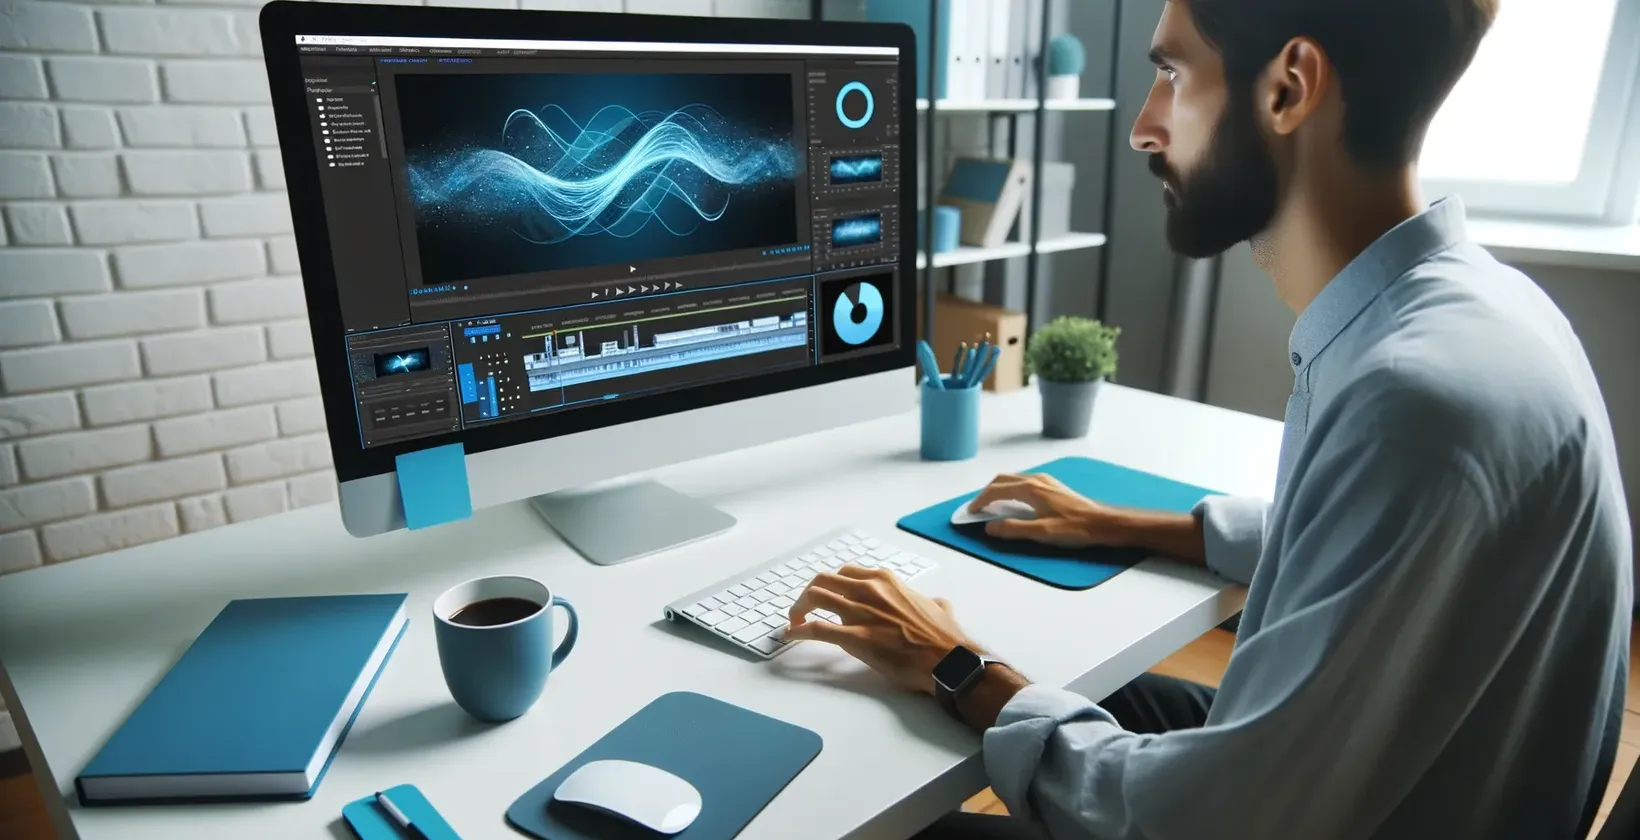 Man skriver på dator med blå skärm, med iMovie undertexter